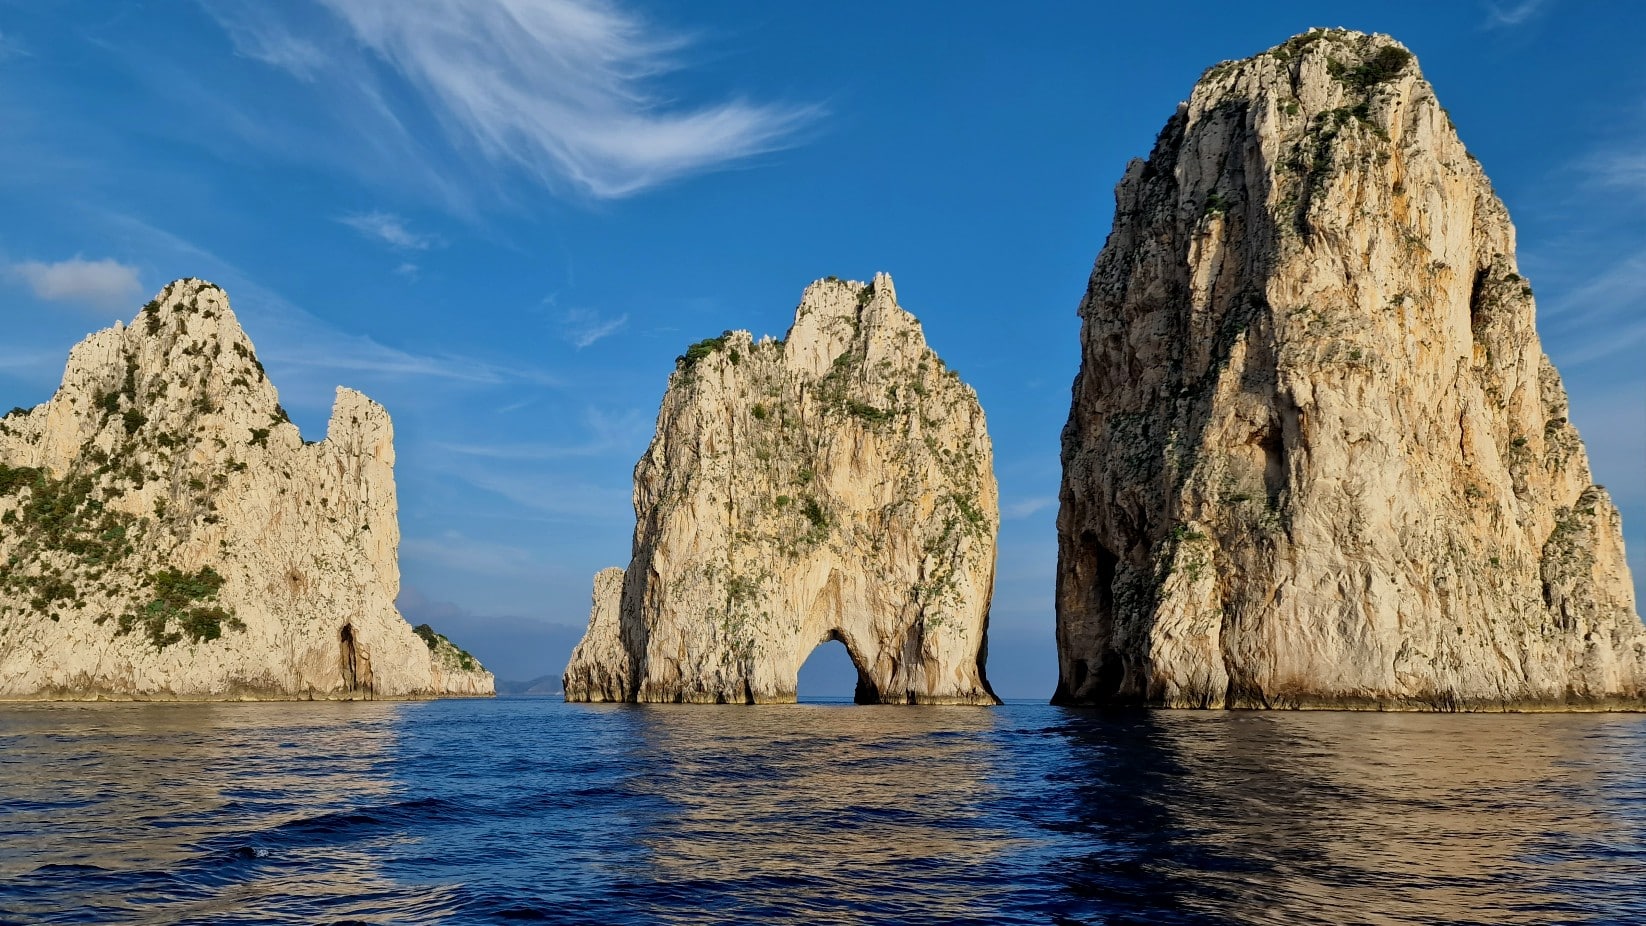 Ubicada en la parte sur de la isla, Marina Piccola tiene una de las playas más hermosas de Capri e Italia. Desde las terrazas, hoteles y balnearios de la zona, se pueden ver los impresionantes Farallones, el monumento más fotografiado de Capri